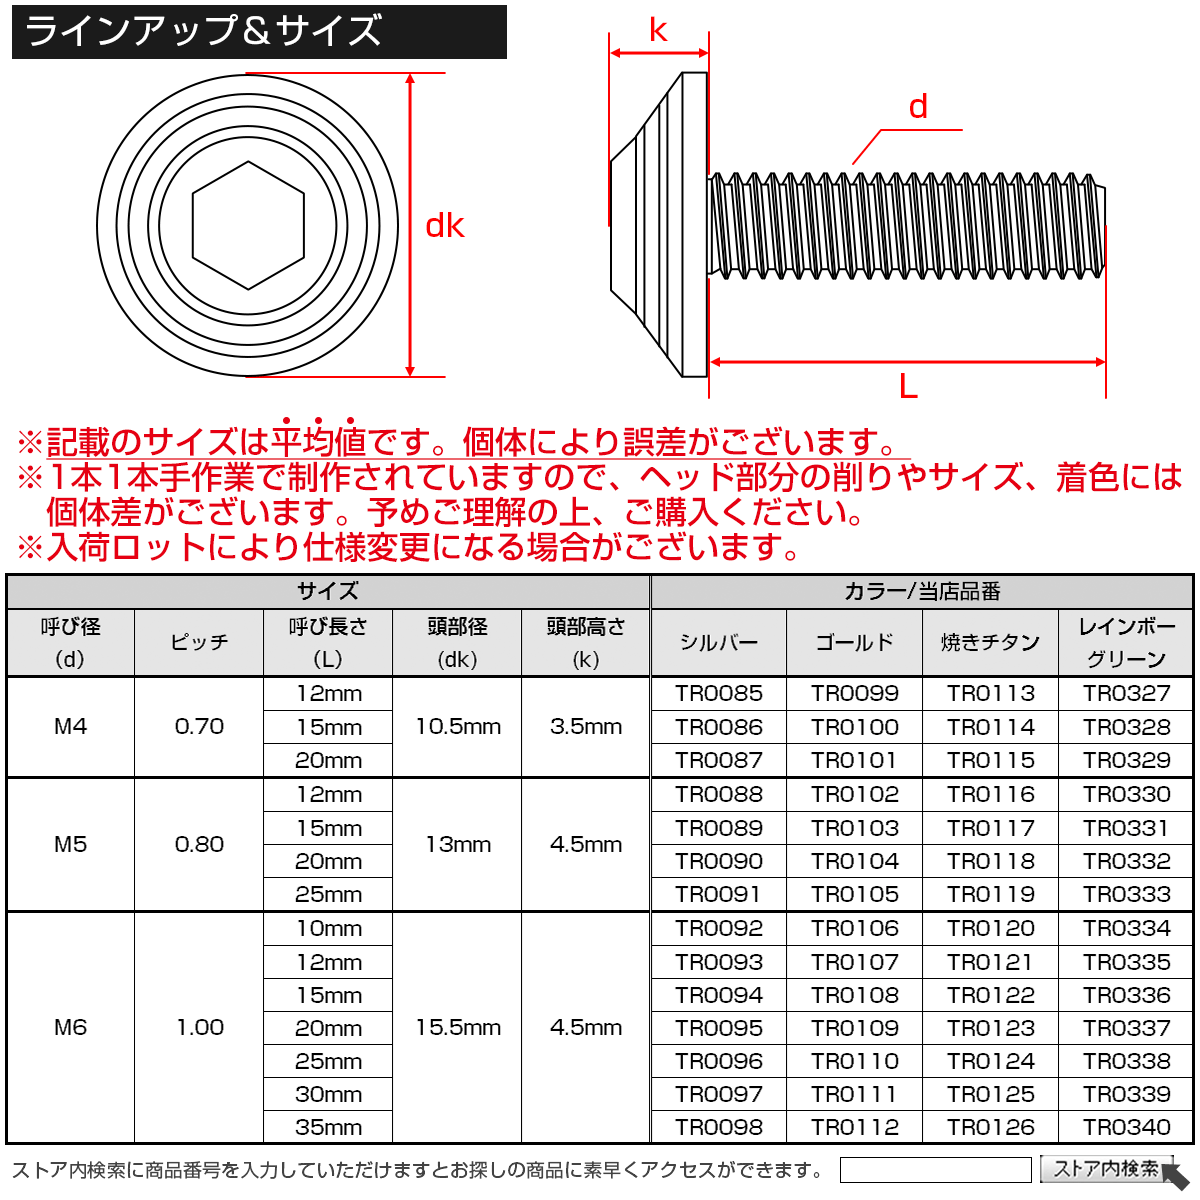 M6×25mm ボタンボルト シェルヘッド SUS304ステンレス カスタムデザイン 焼チタンカラー TR0124の画像4